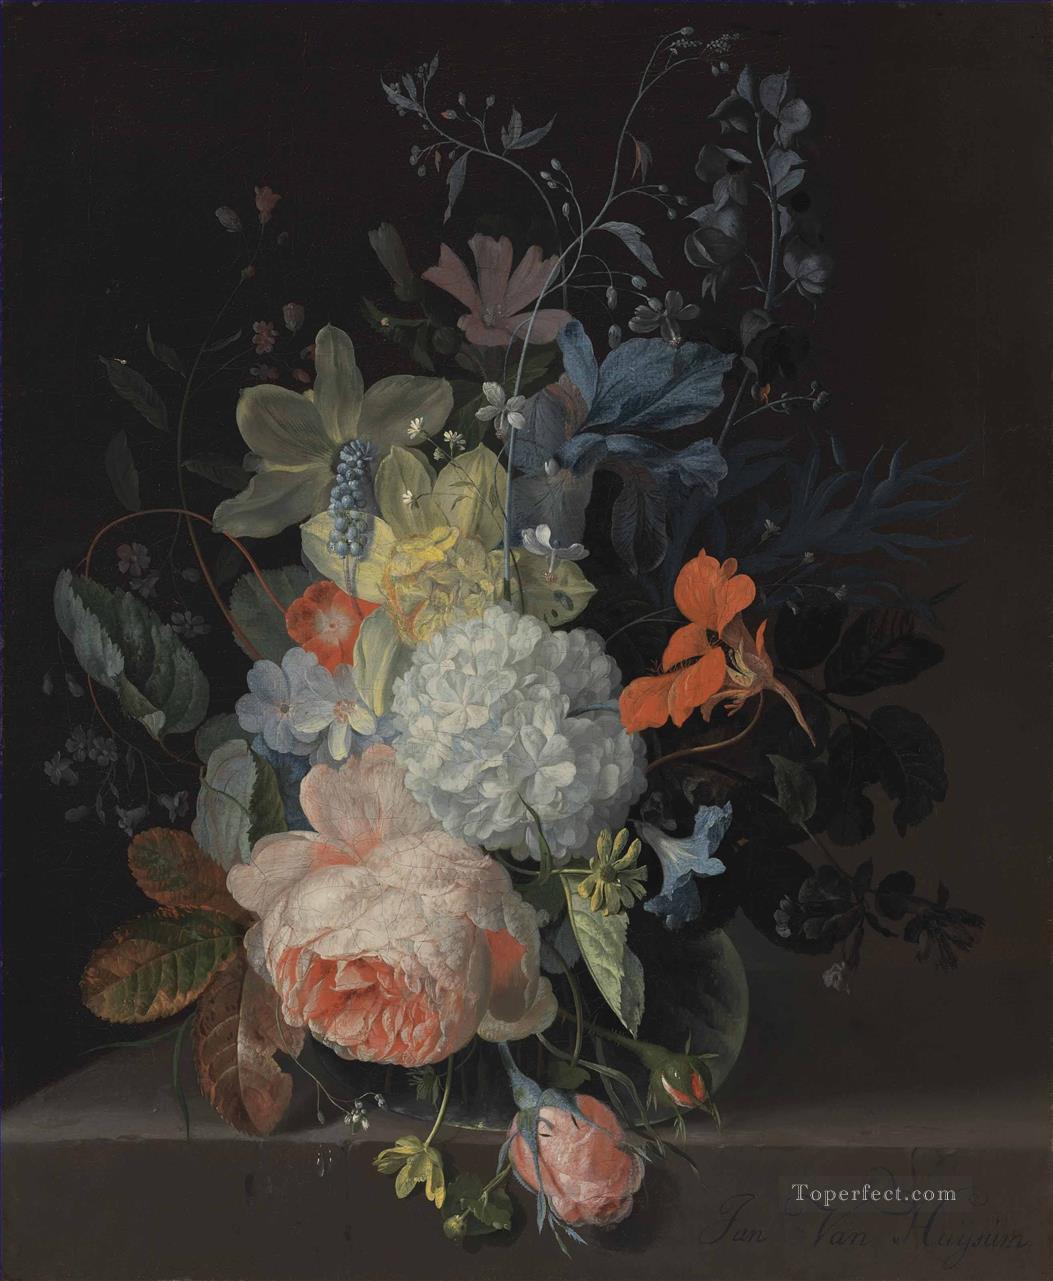 Una rosa, una bola de nieve, narcisos, lirios y otras flores en un jarrón de cristal sobre una cornisa de piedra Jan van Huysum Pintura al óleo